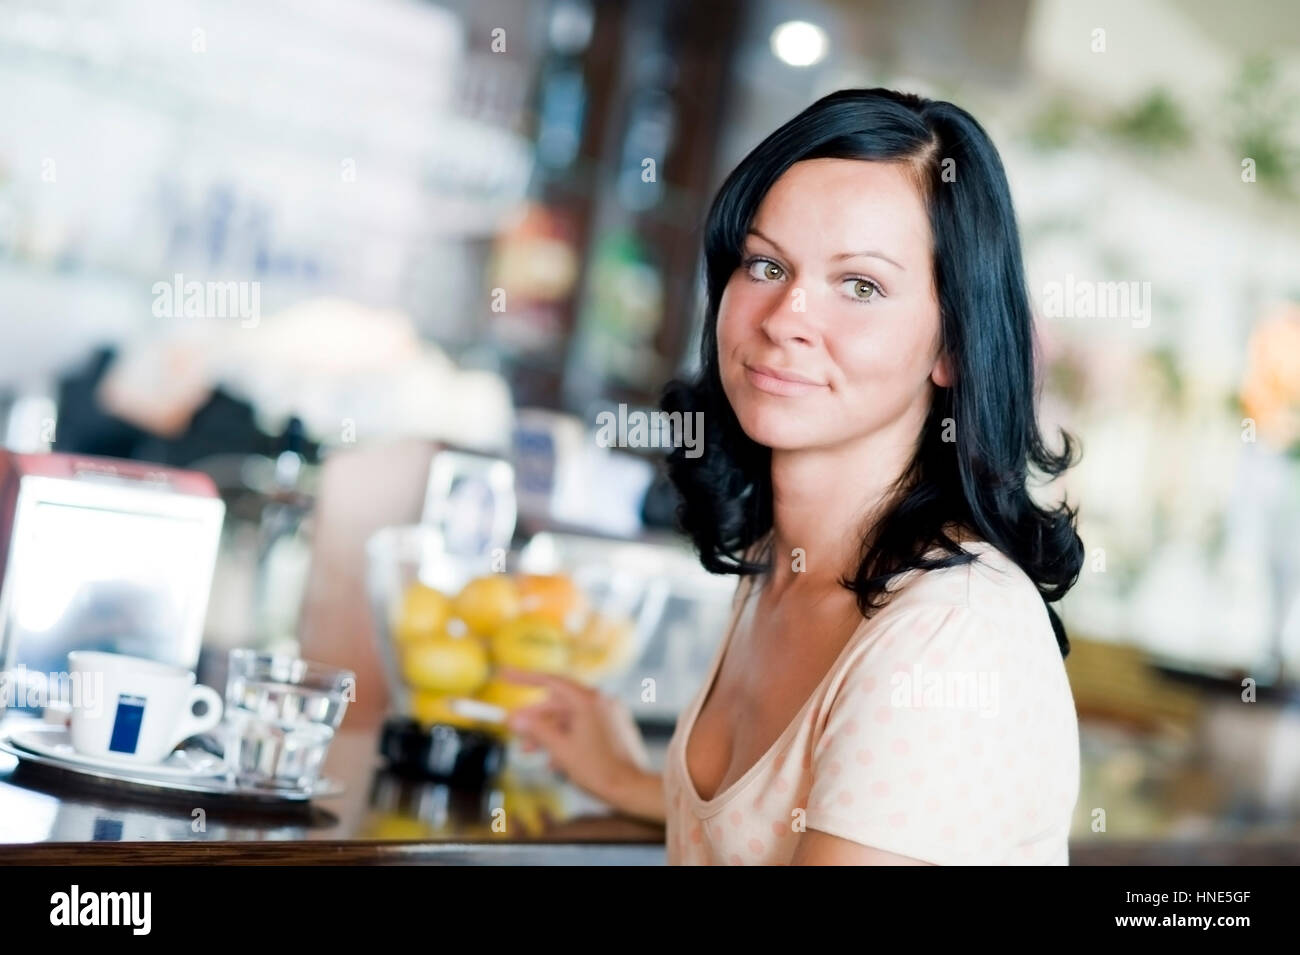 Model release, Junge Frau sitzt an der Theke im Kaffeehaus und raucht - young woman smoking in cafeteria Stock Photo